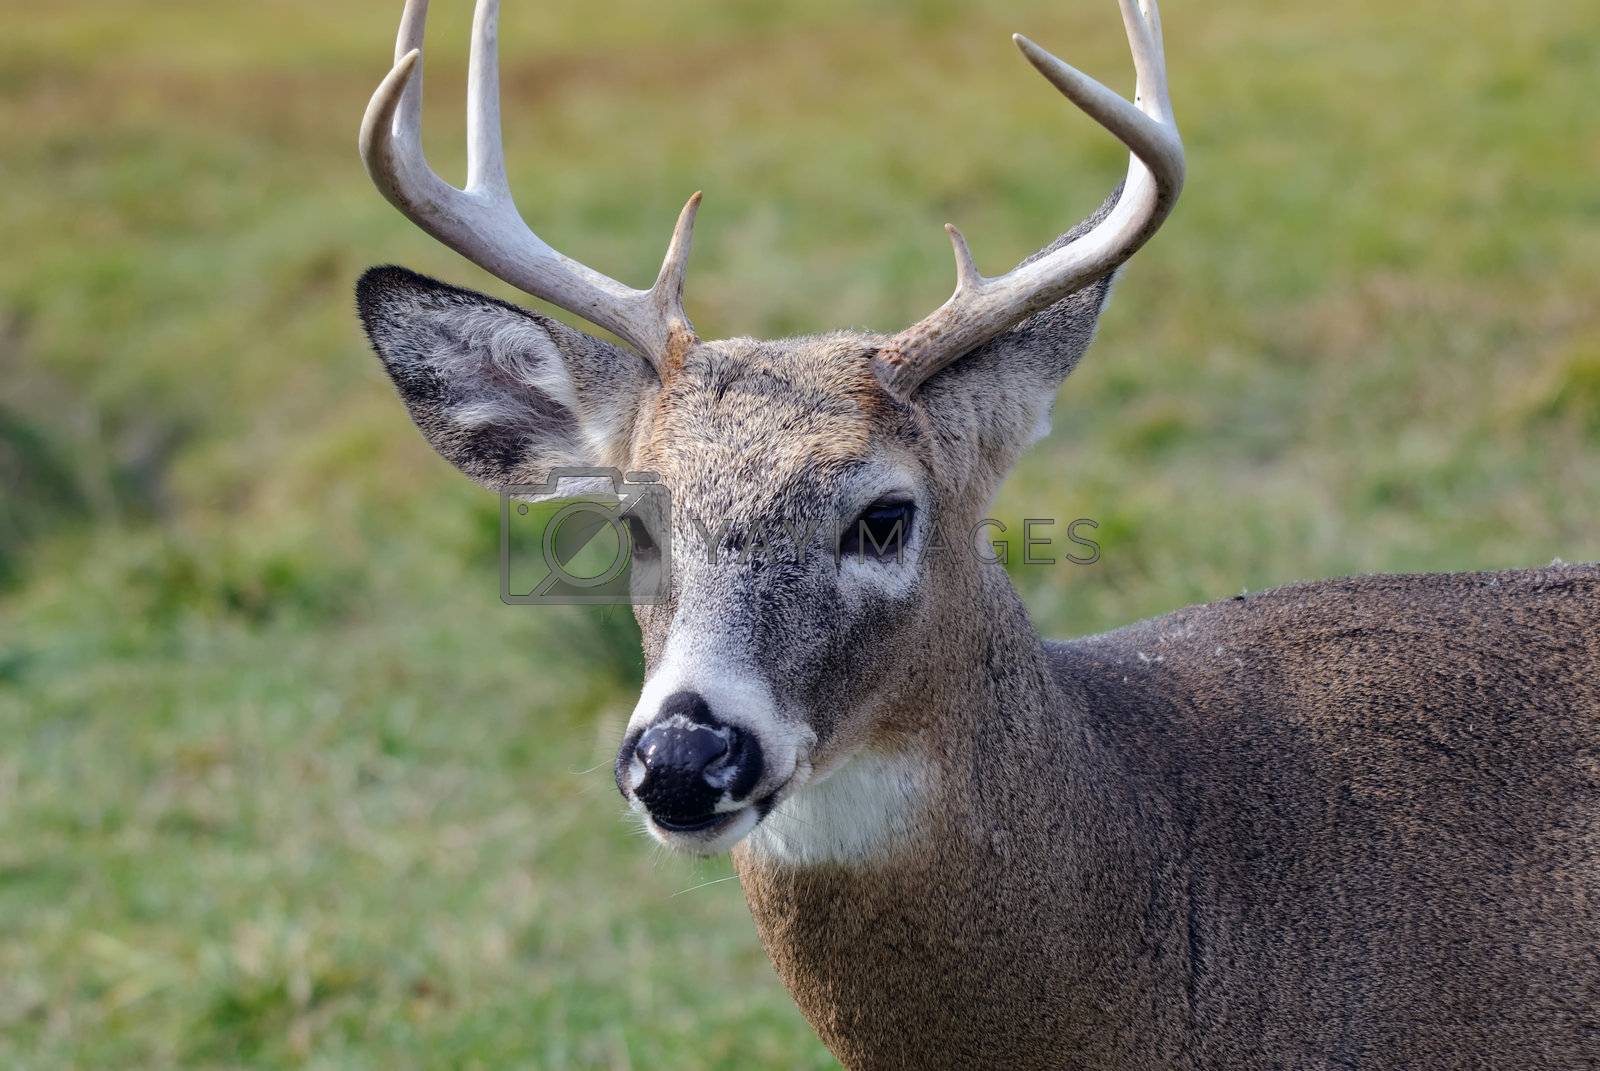 Royalty free image of Whitetail deer by nialat